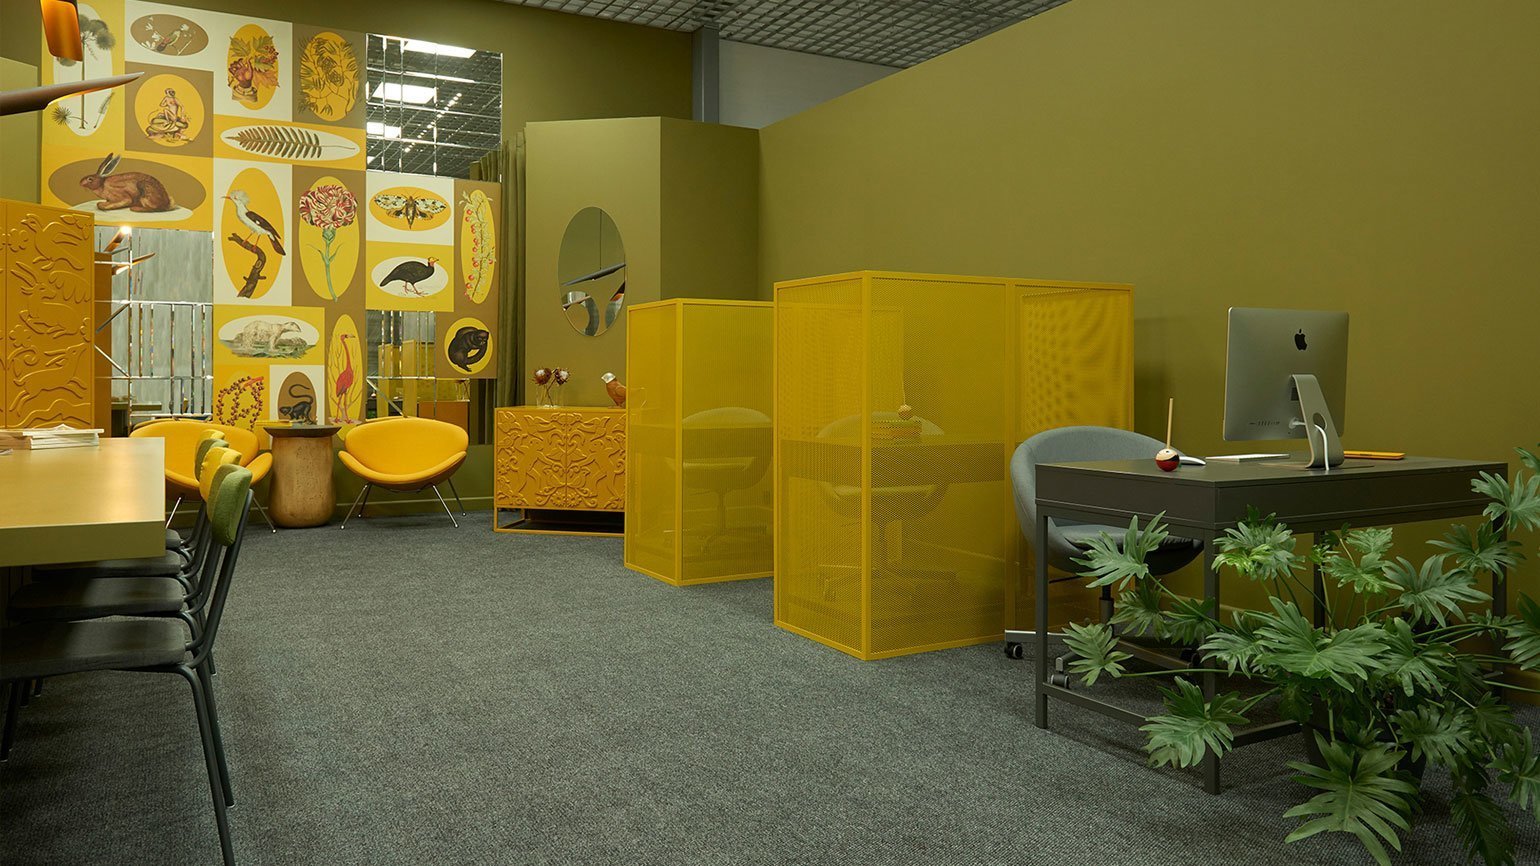 дизайн интерьера офиса с зелёными стенами, тёмно-зелёным ковролином, жёлтыми сетчатыми перегородками, жёлтыми креслами, стульями с зелёной обивкой, картинками и зеркалами